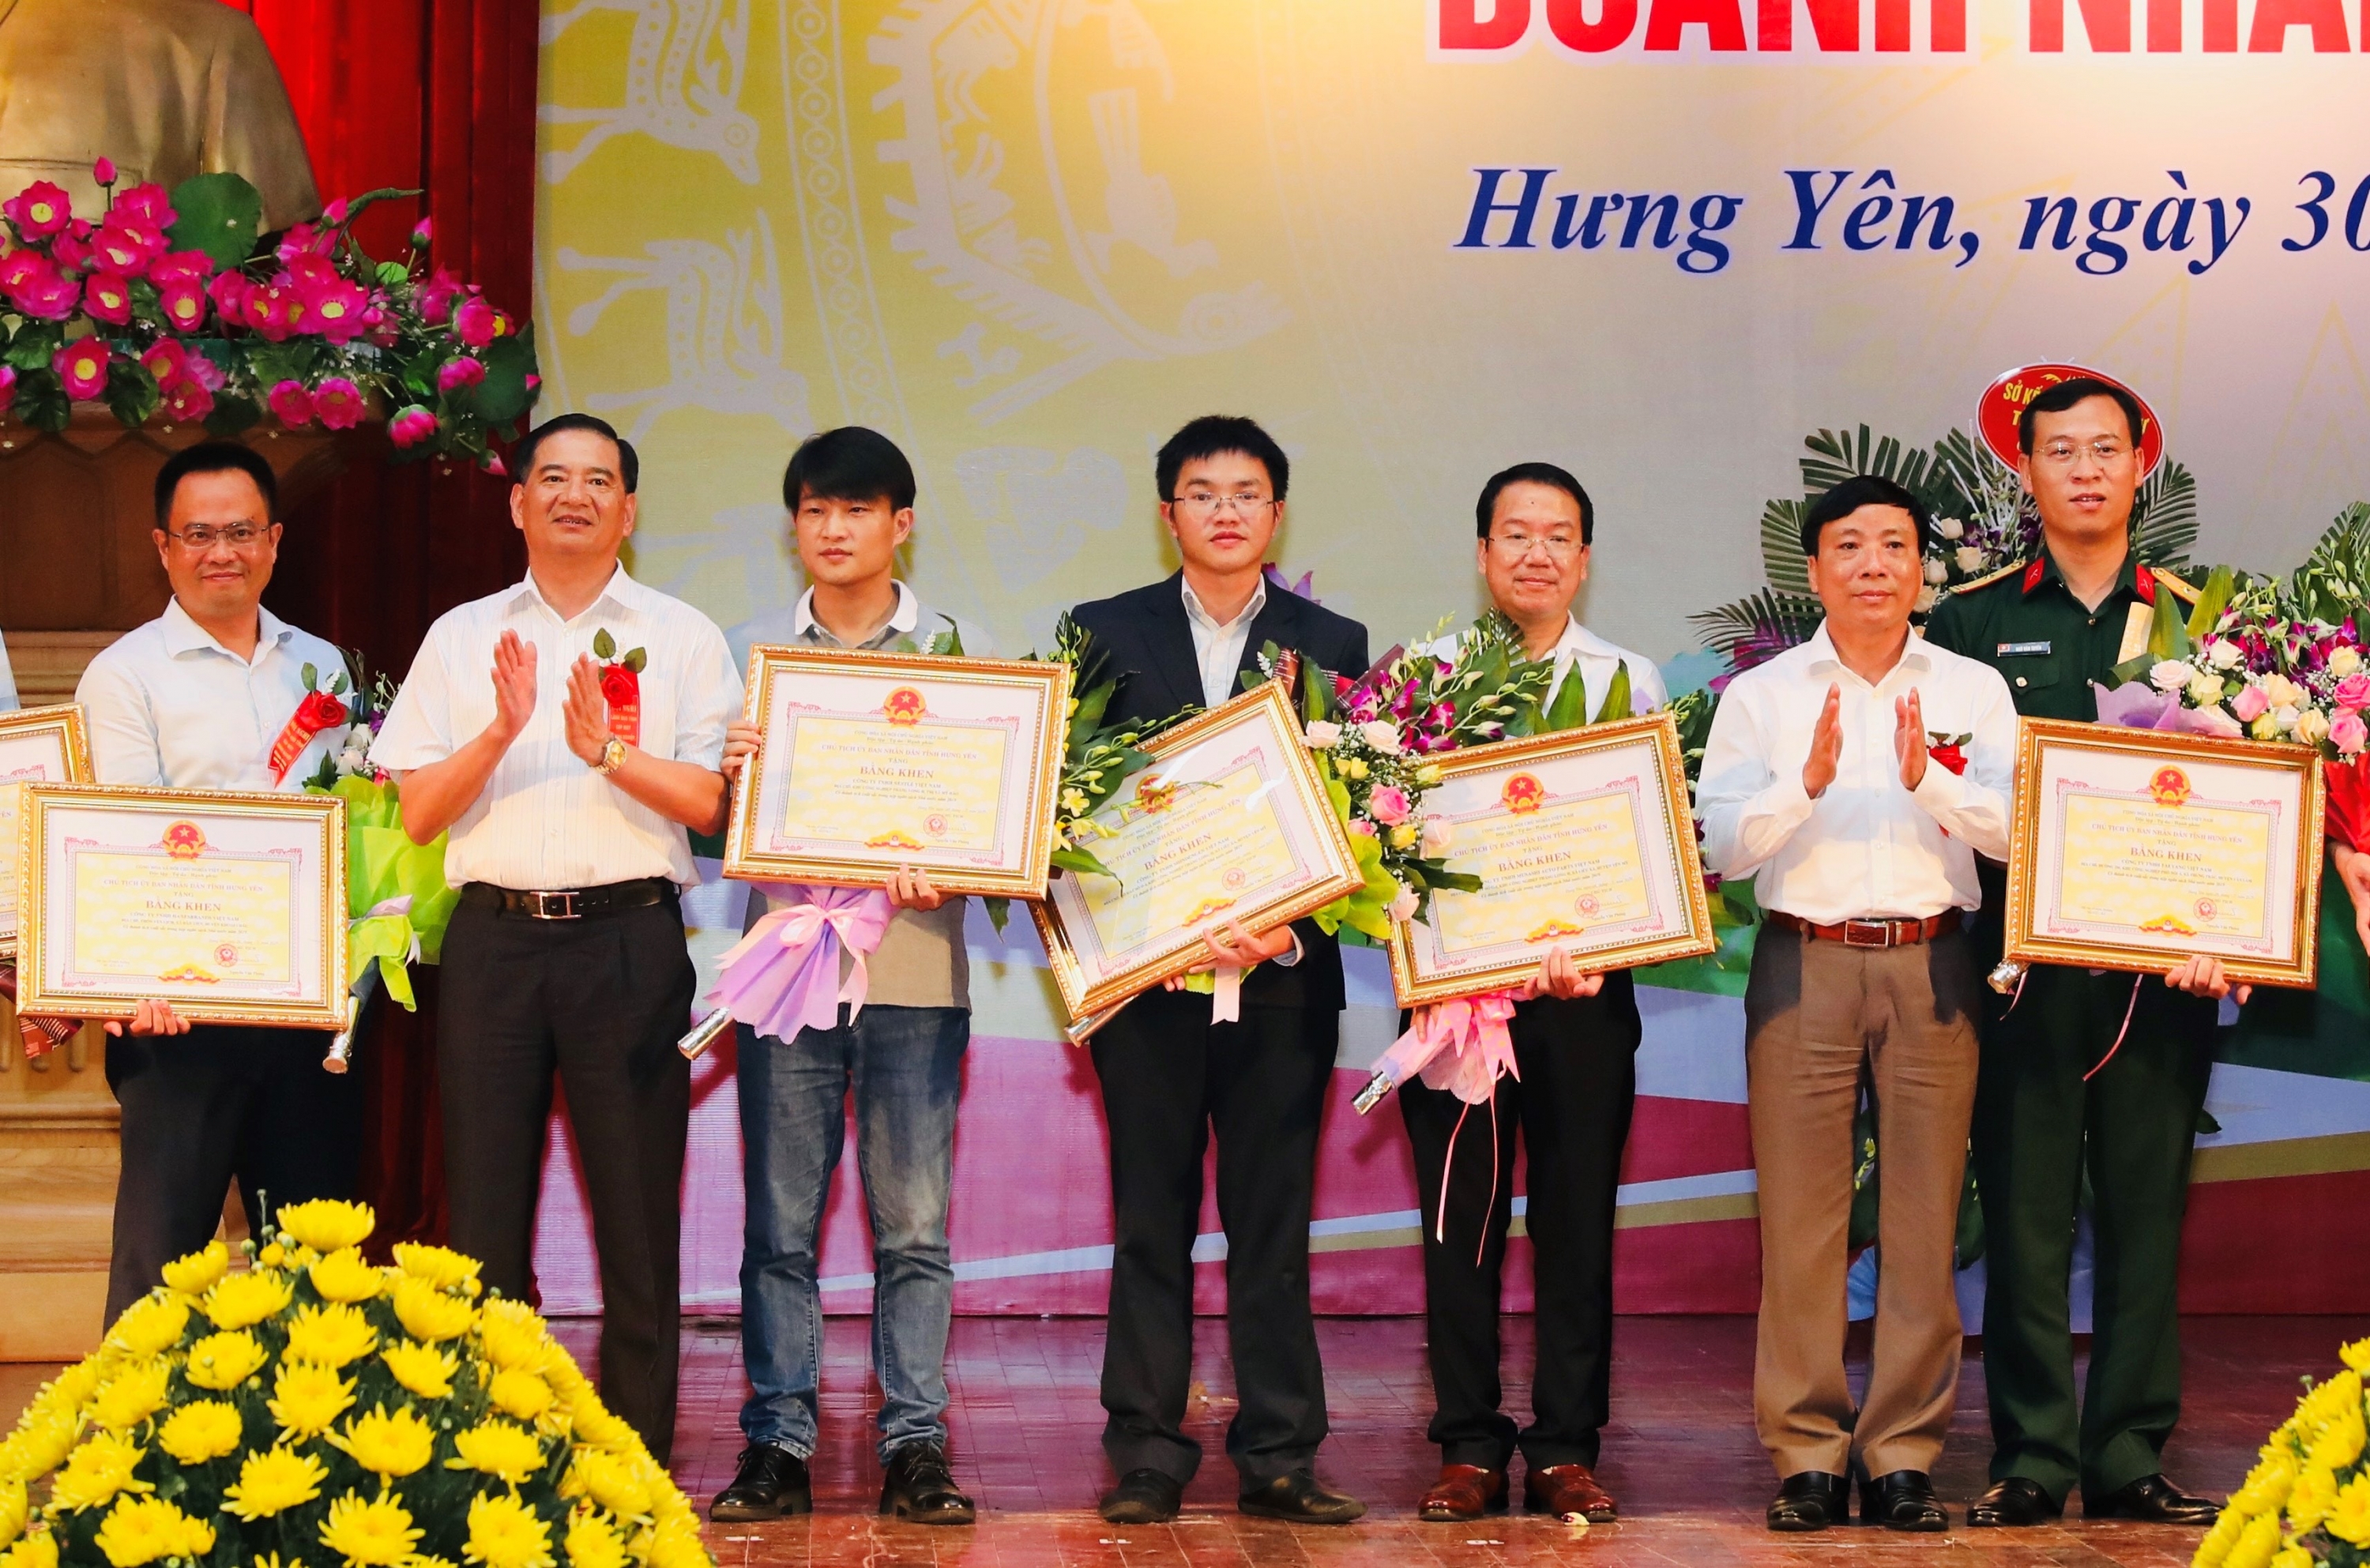 Nestlé Việt Nam tiếp tục được ghi nhận vì các đóng góp cho phát triển kinh tế xã hội